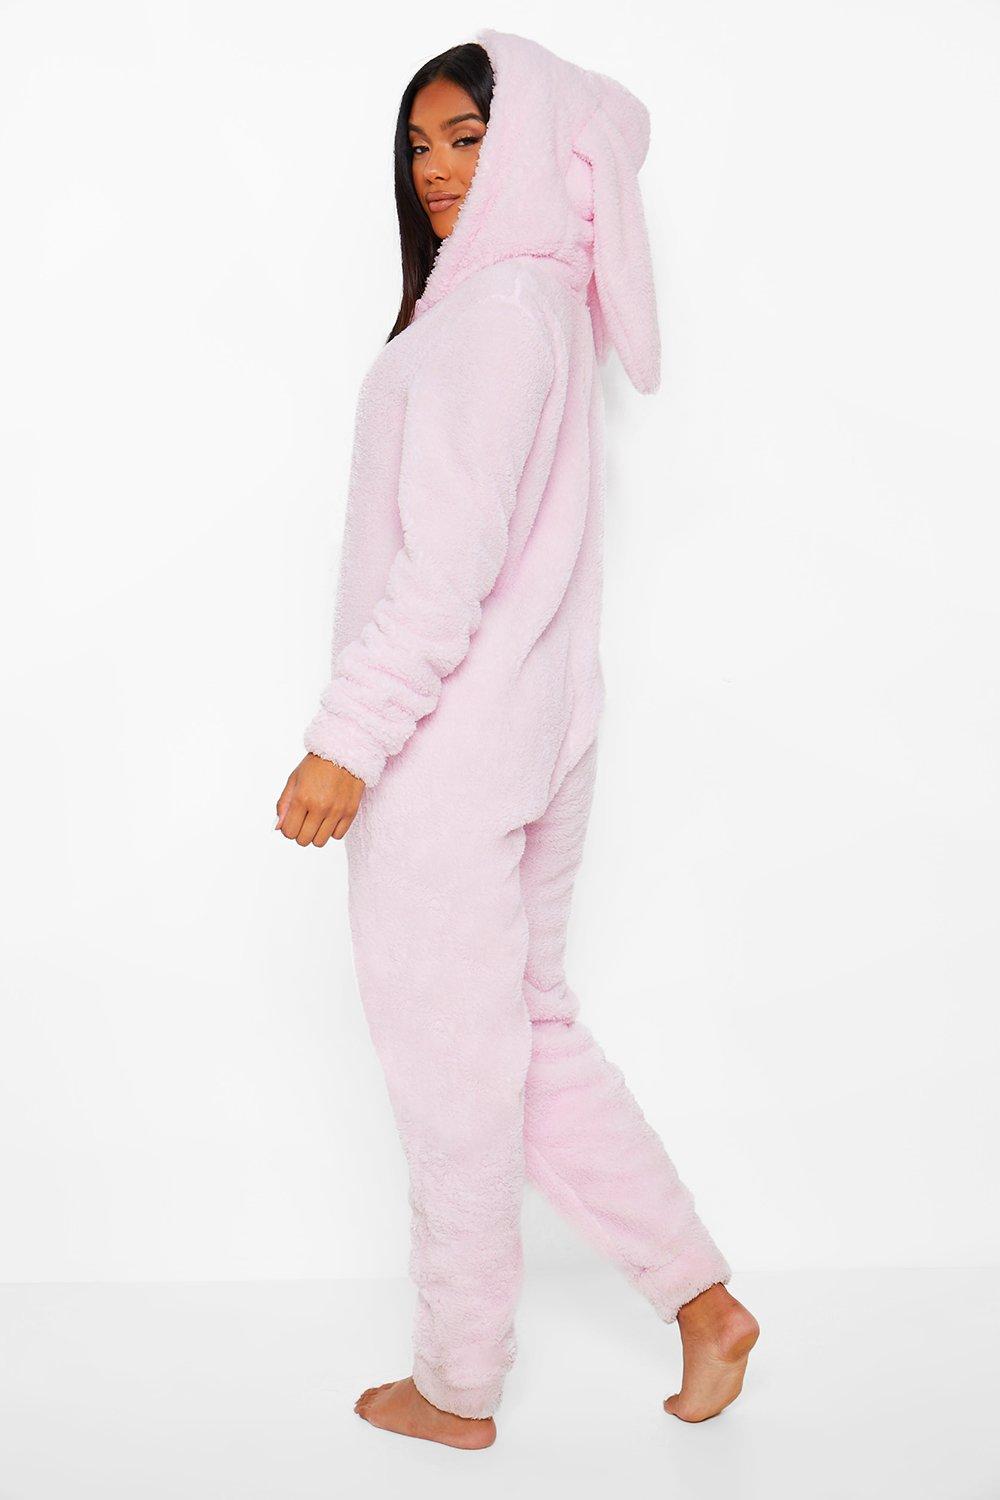 https://media.boohoo.com/i/boohoo/nzz88298_pink_xl_1/female-pink-fleece-bunny-ear-onesie